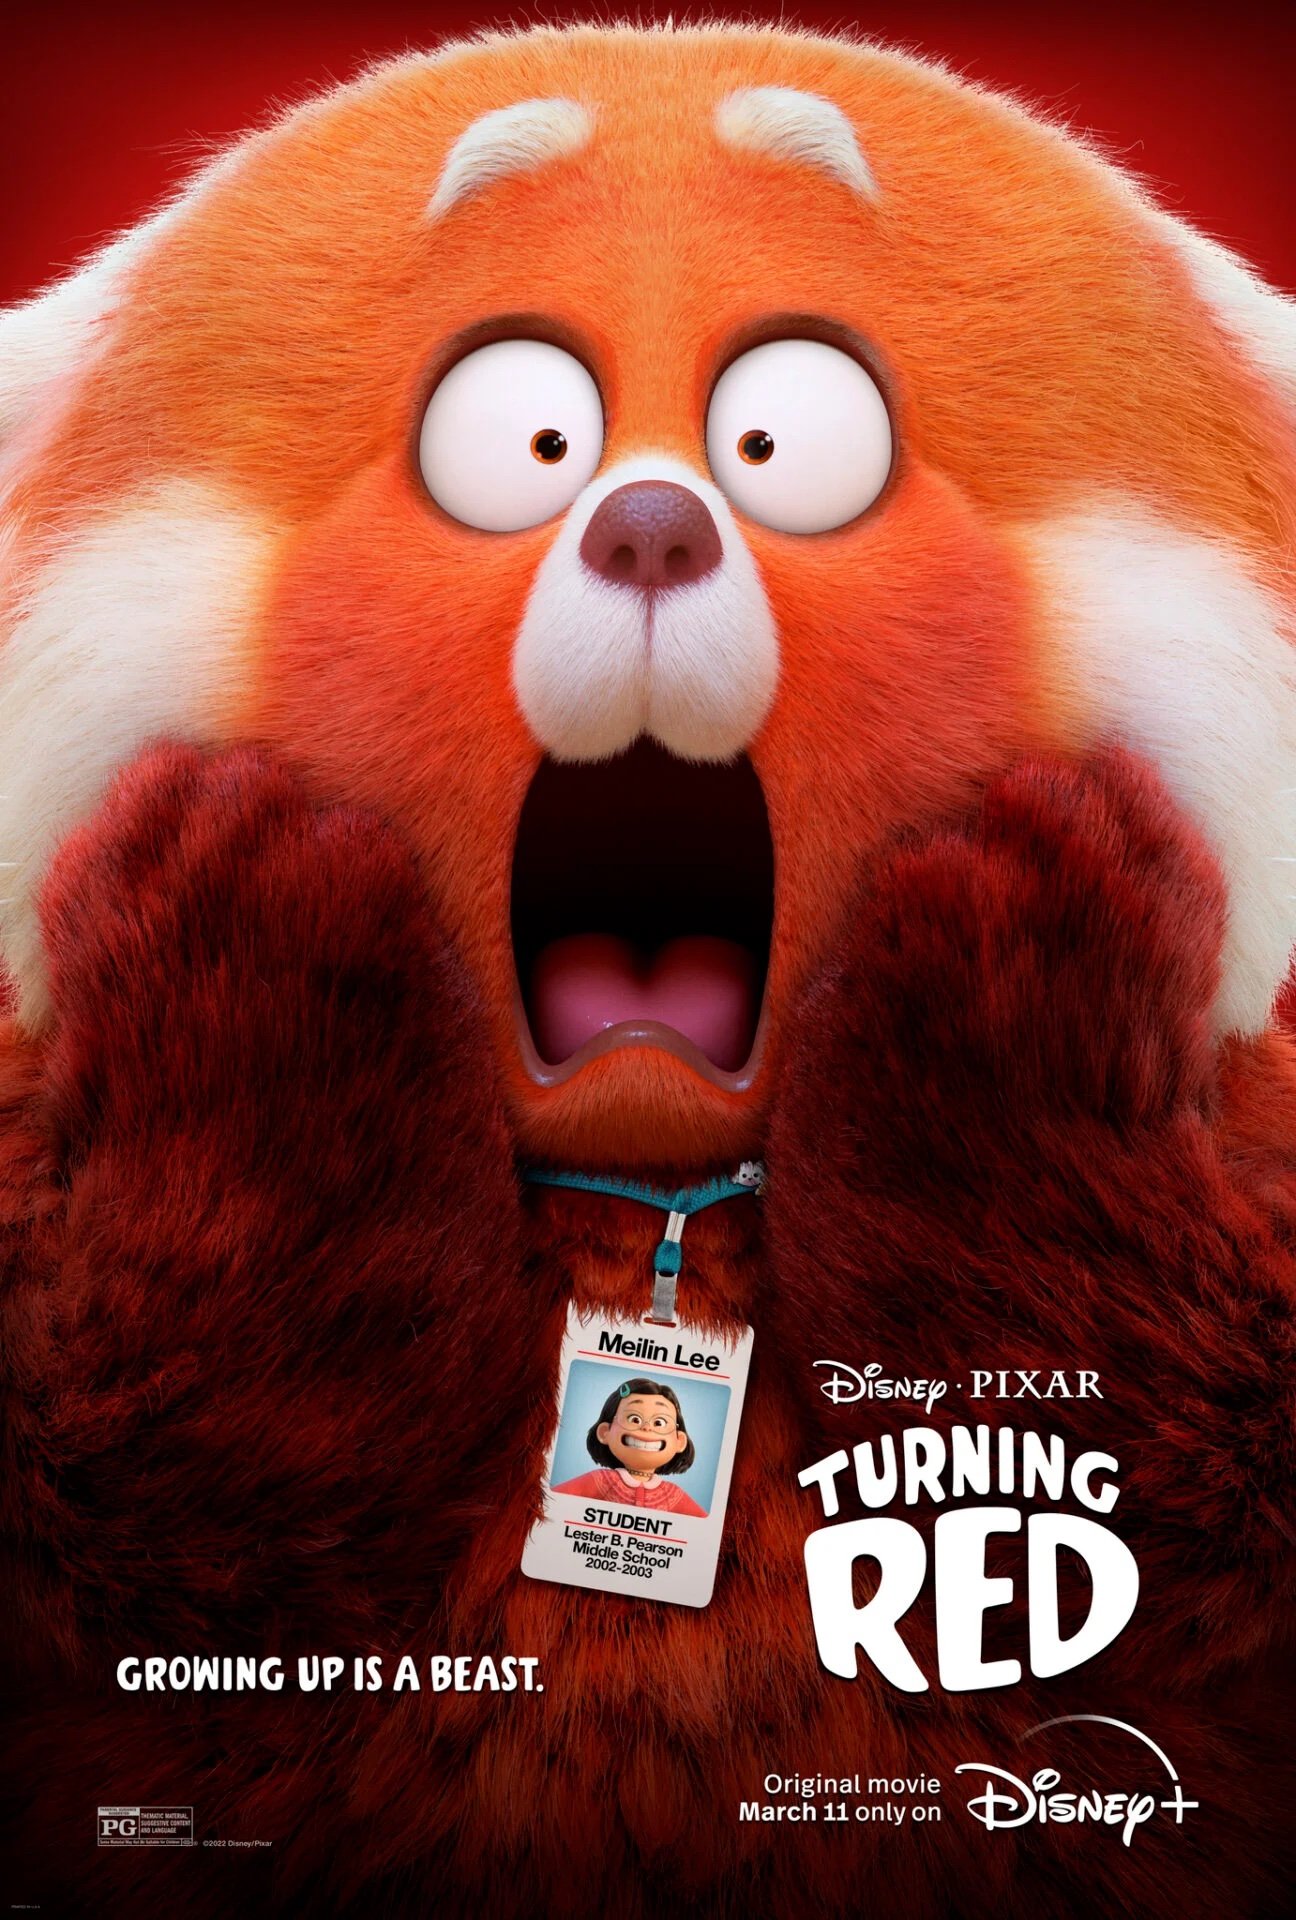 Upcoming Movies - Disney Pixar Turning Red 2022!